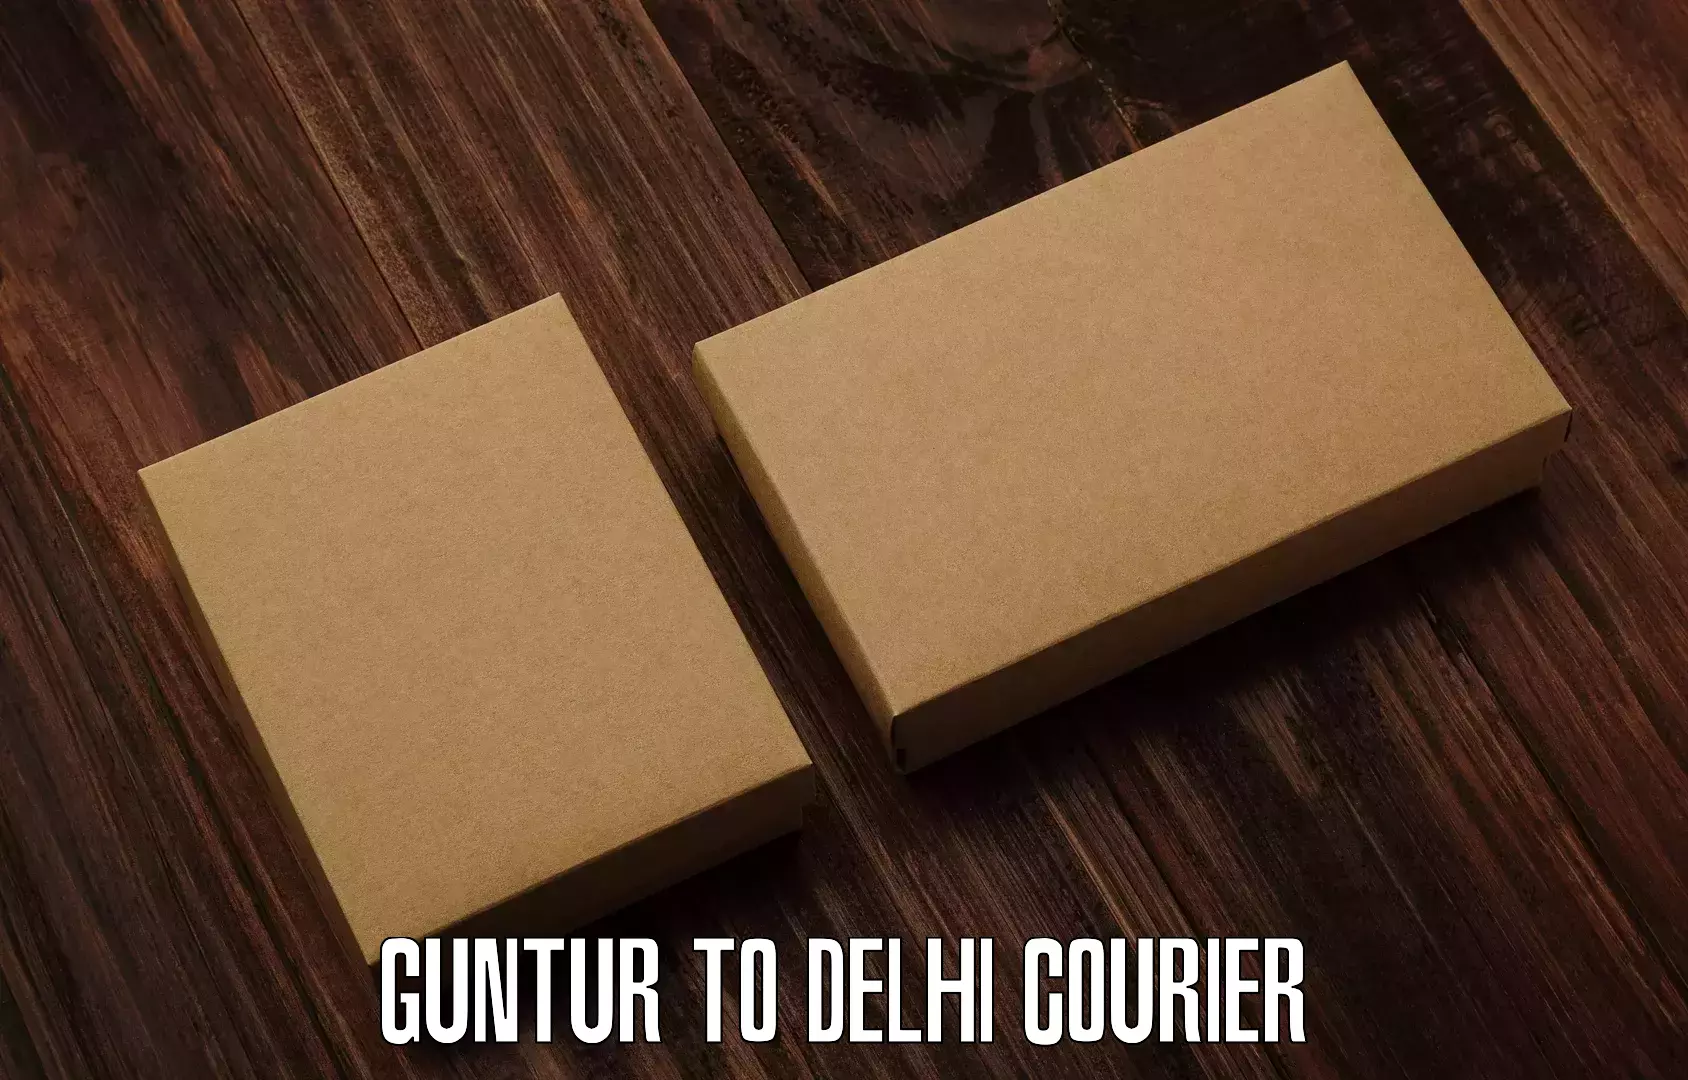 Overnight delivery services Guntur to Jamia Millia Islamia New Delhi